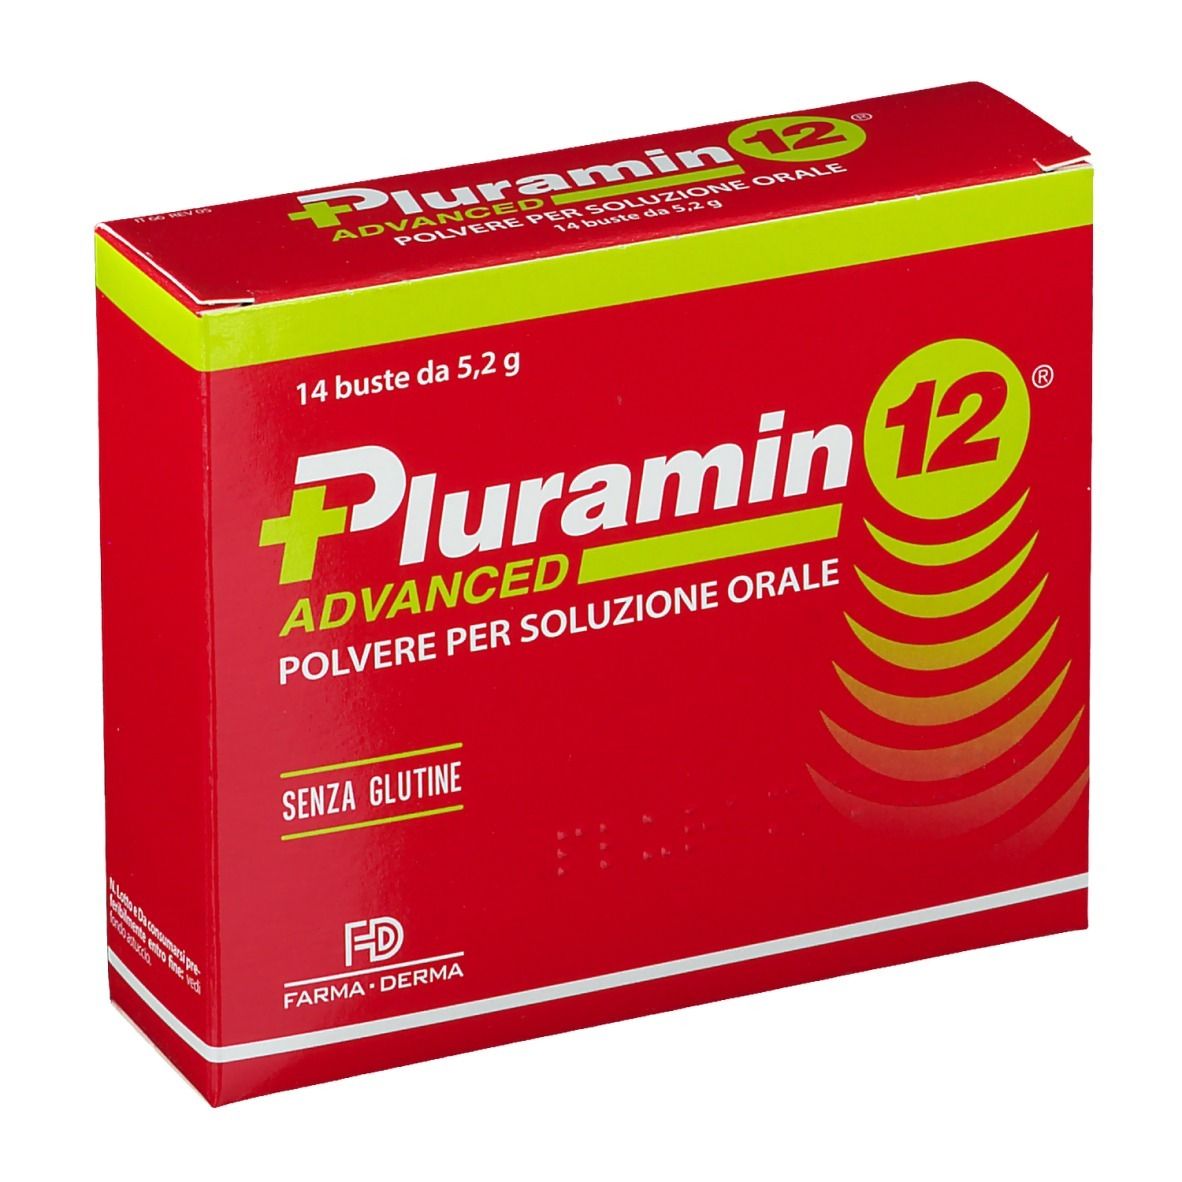 Pluramin® 12 Advanced